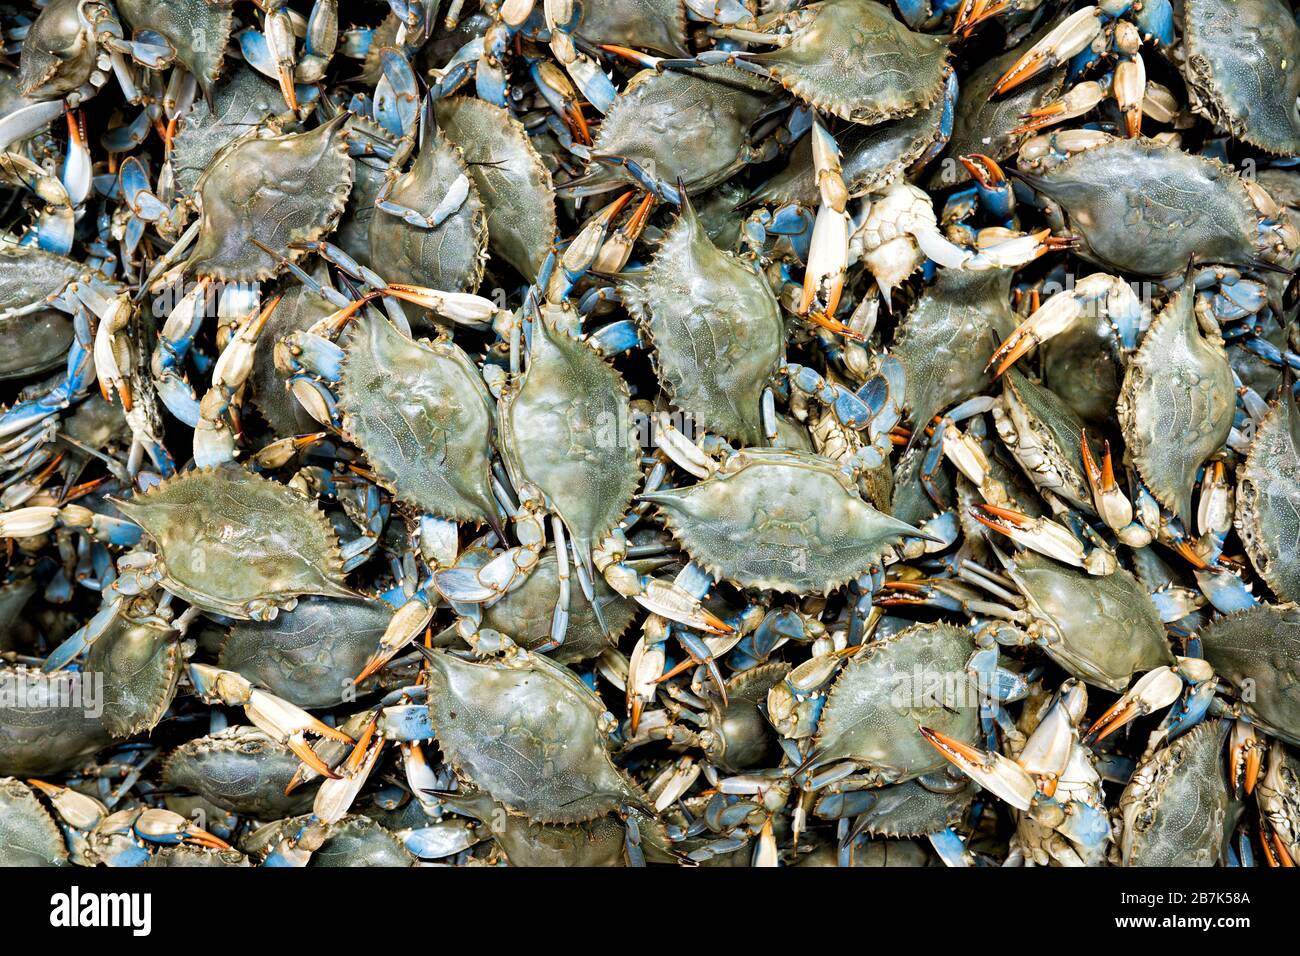 Chesapeake Bay, MD - i granchi blu (Callinectes sapidus) sono una specialità locale e delicatezza della regione del centro-Atlantico degli Stati Uniti, in particolare la zona di Chesapeake Bay. Foto Stock